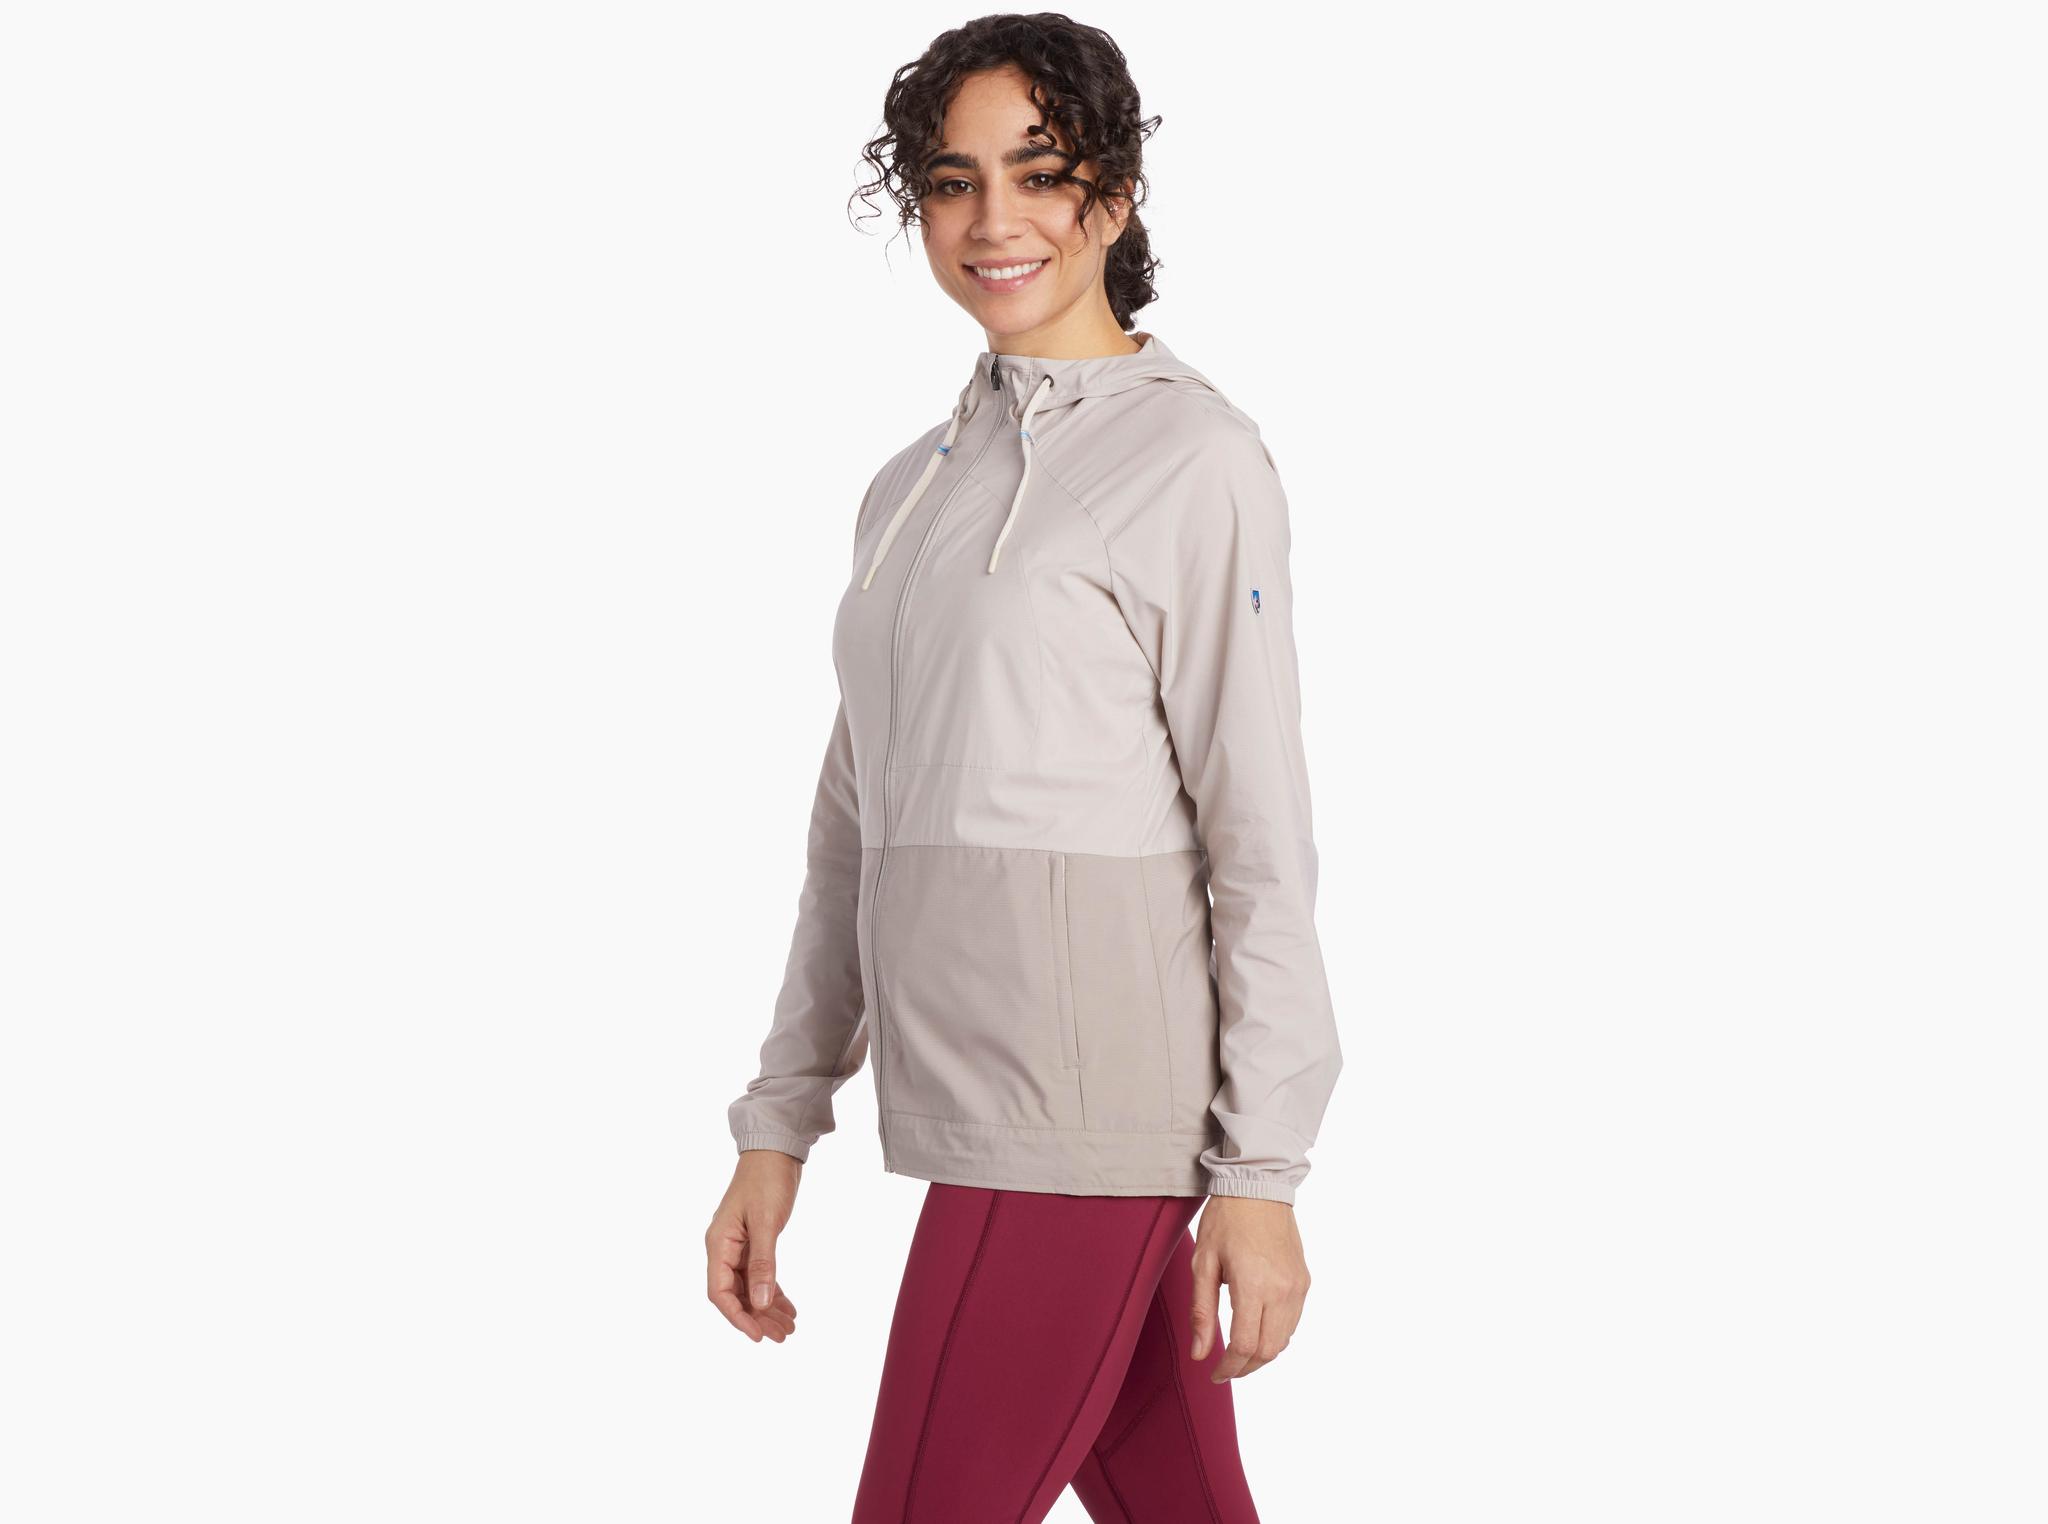 Eskape™ Jacket in Women's Outerwear | KÜHL Clothing